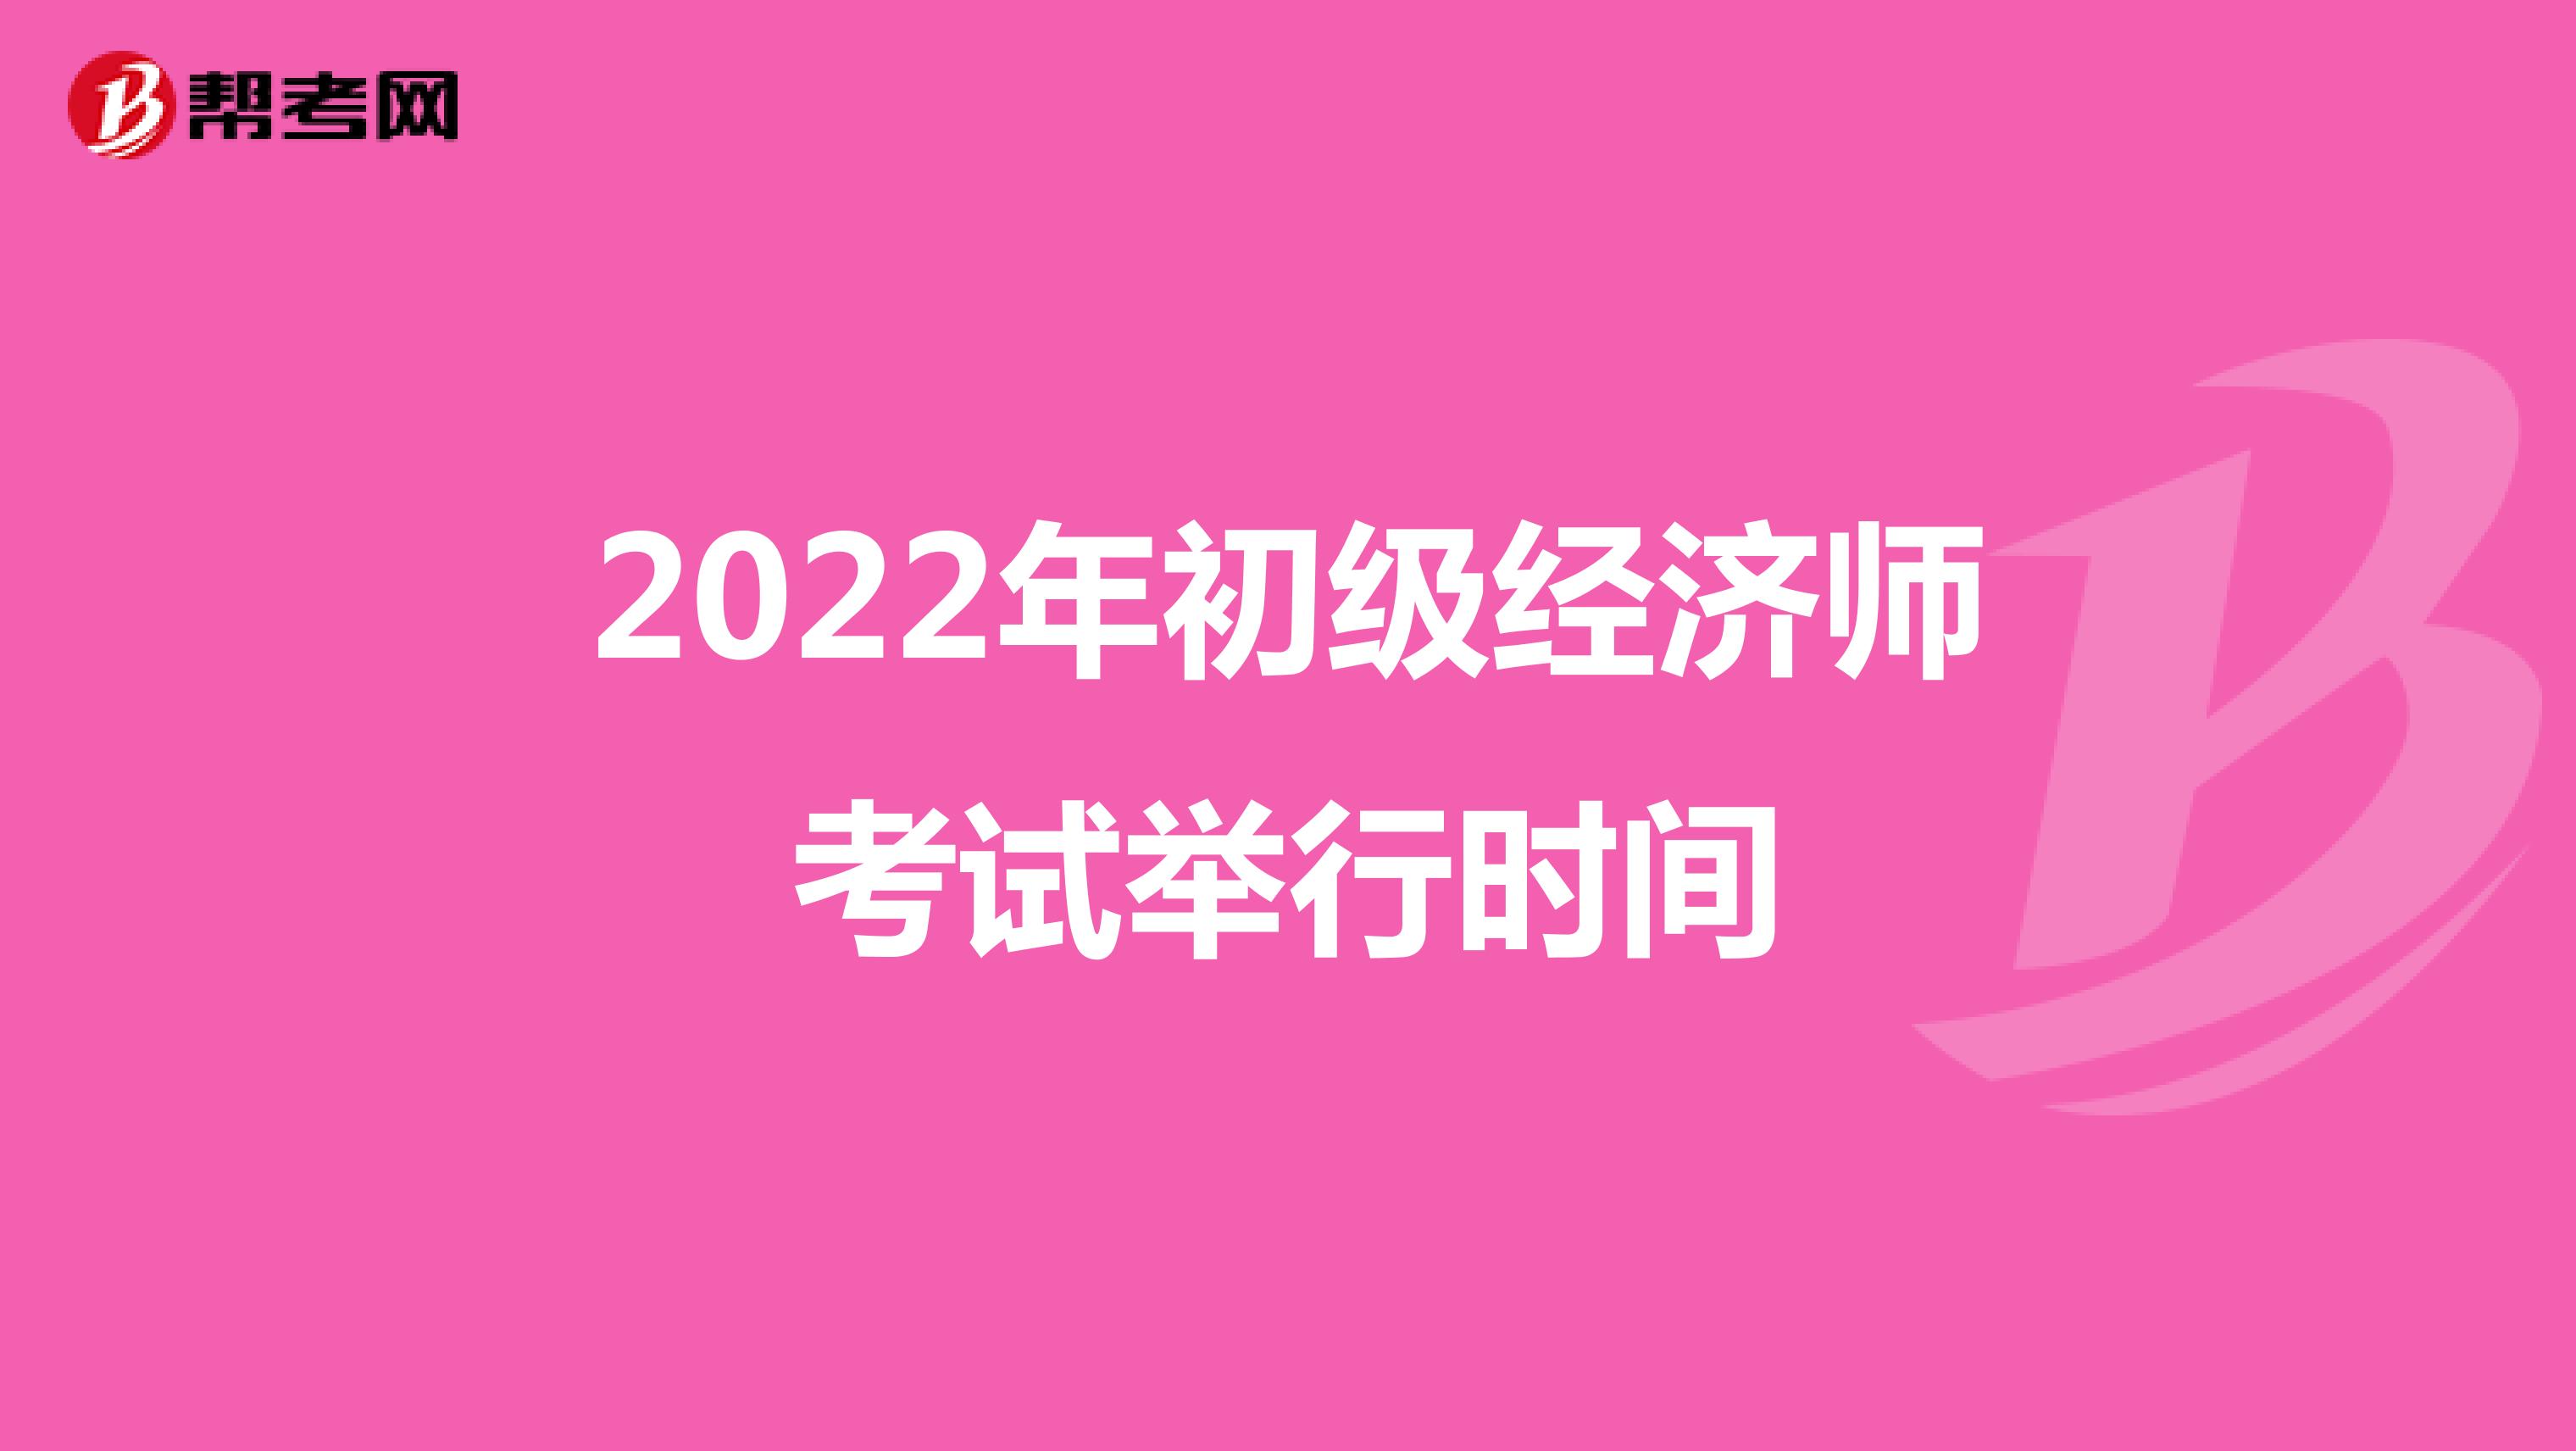 2022年初级经济师考试举行时间